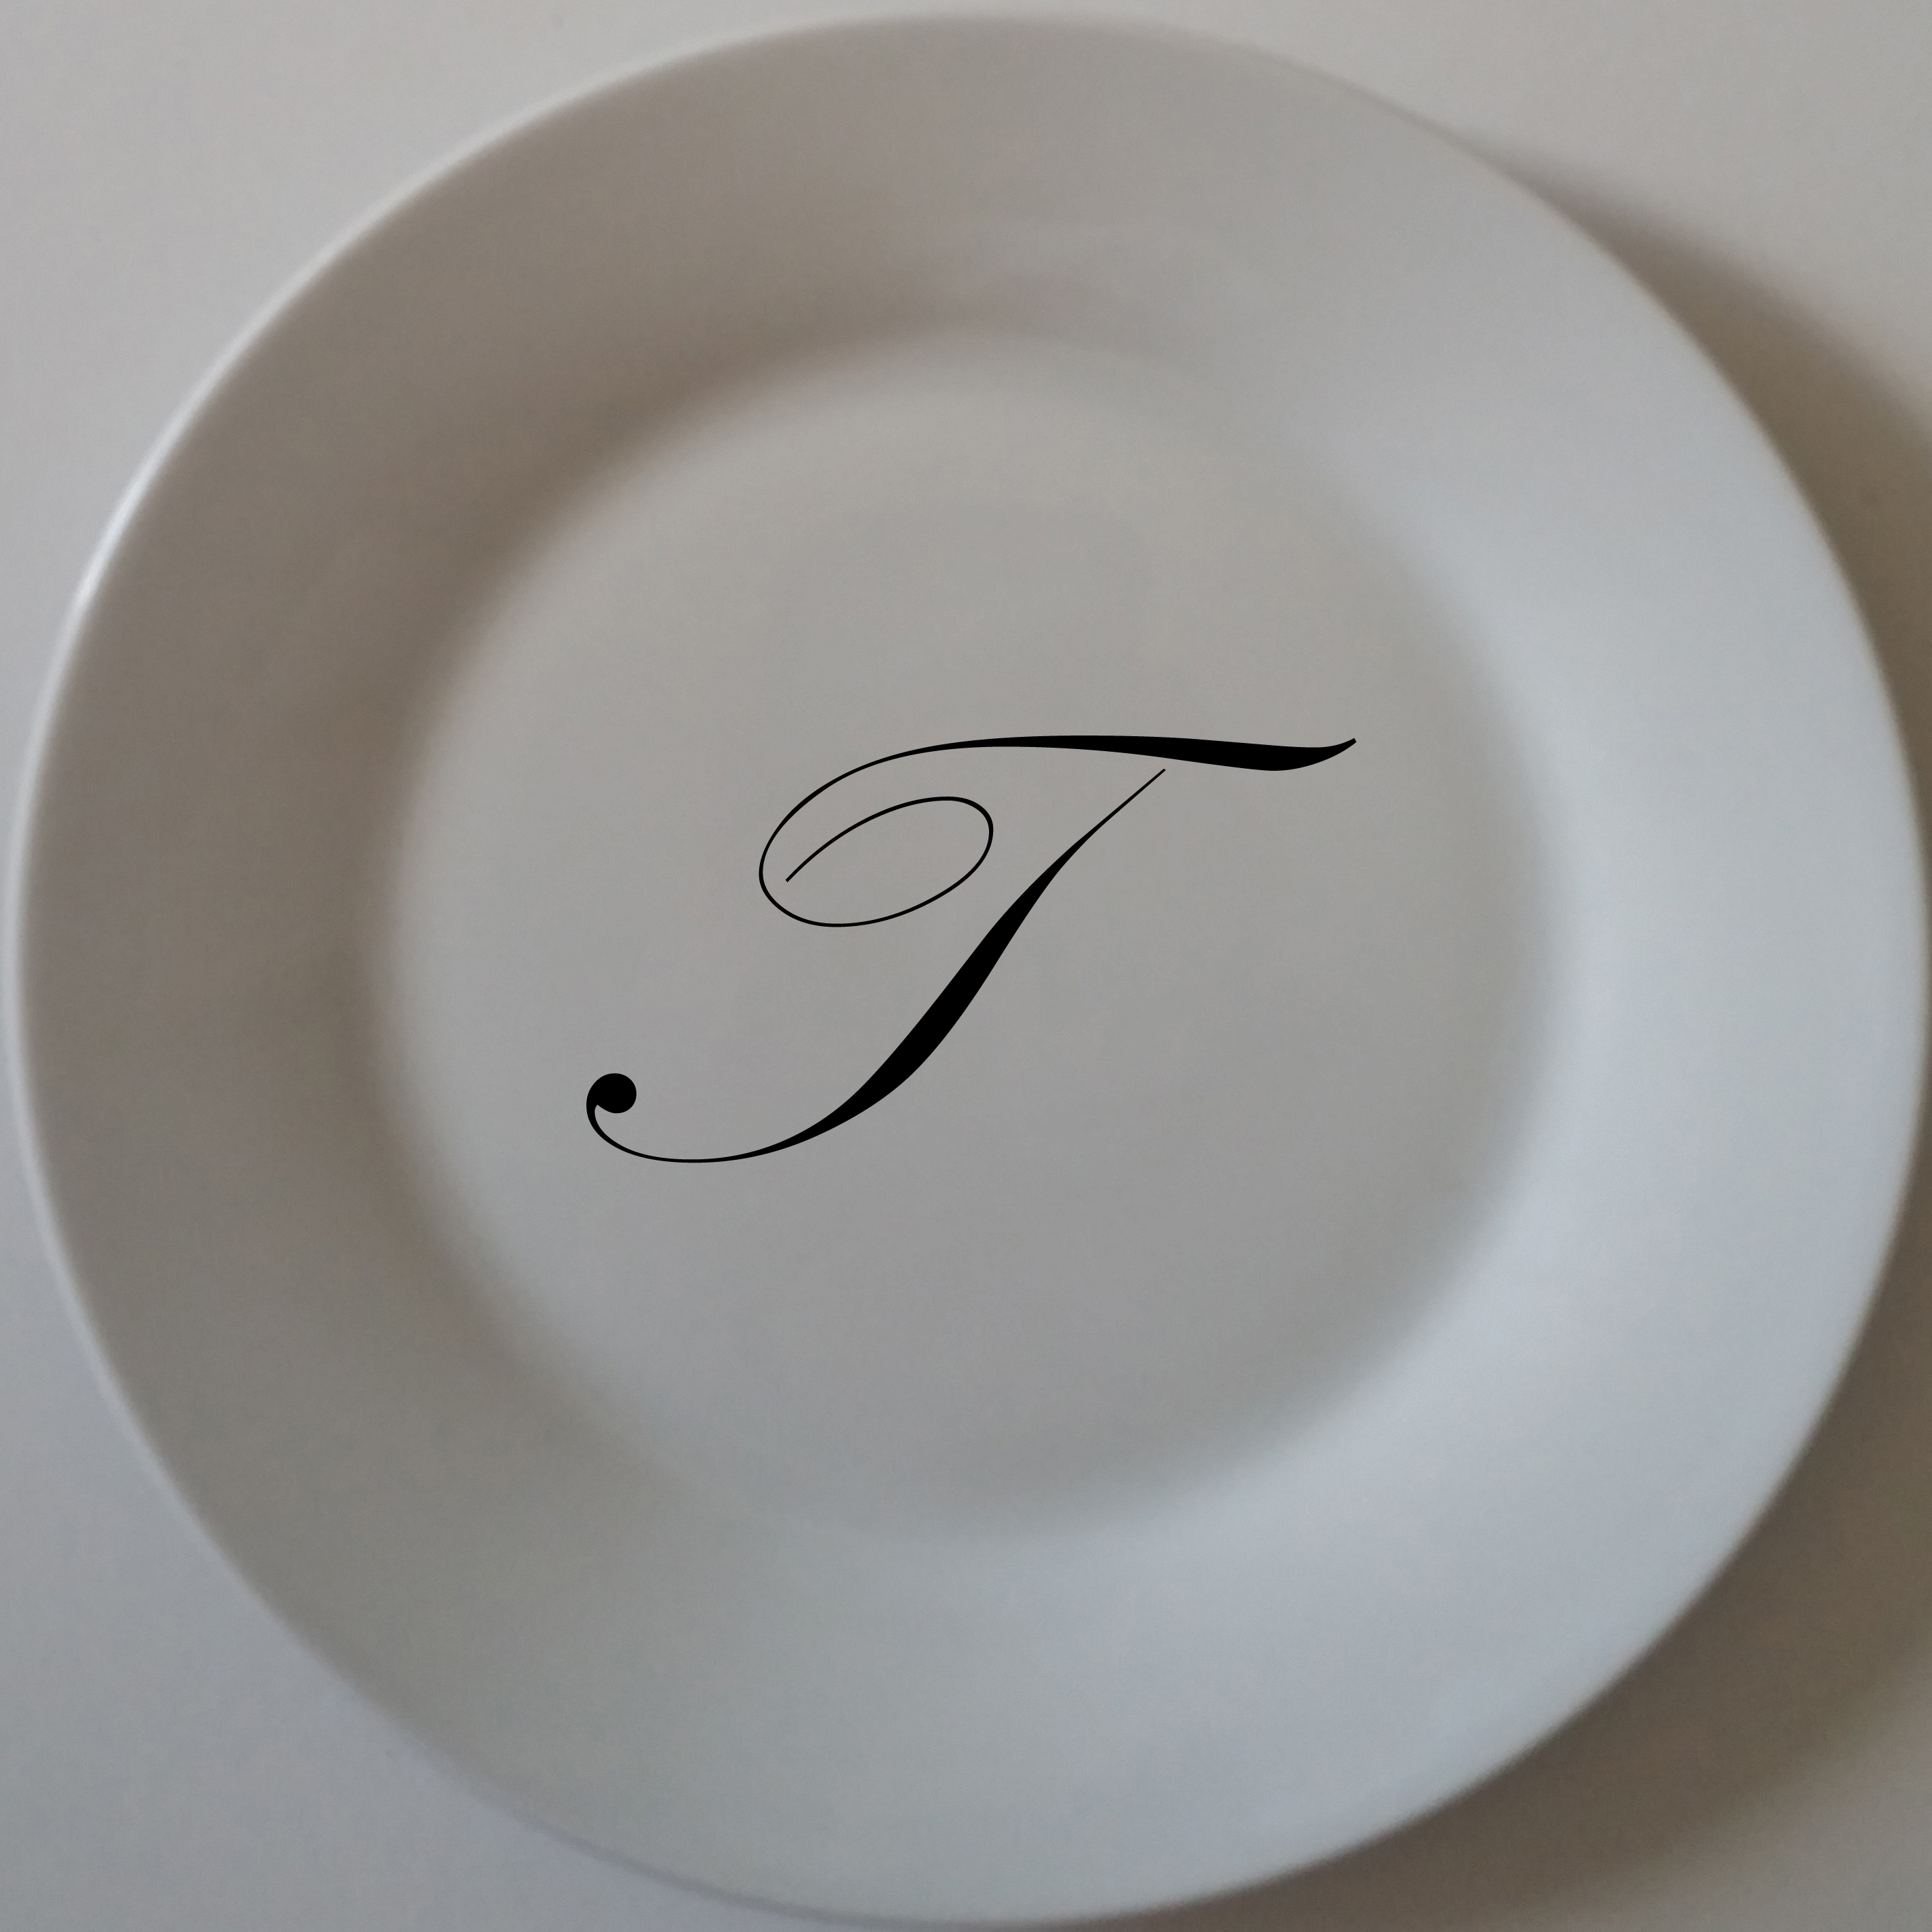 custom printed monogram on standard porcelain dinner plates